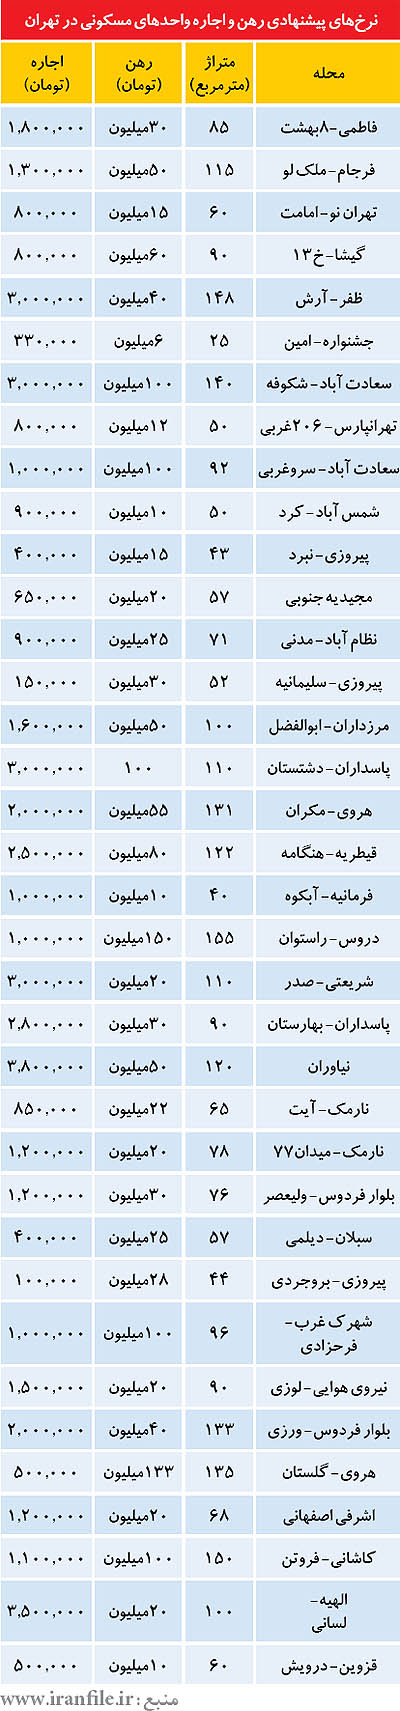 نرخ اجاره مسکن در مناطق مختلف تهران (+جدول)